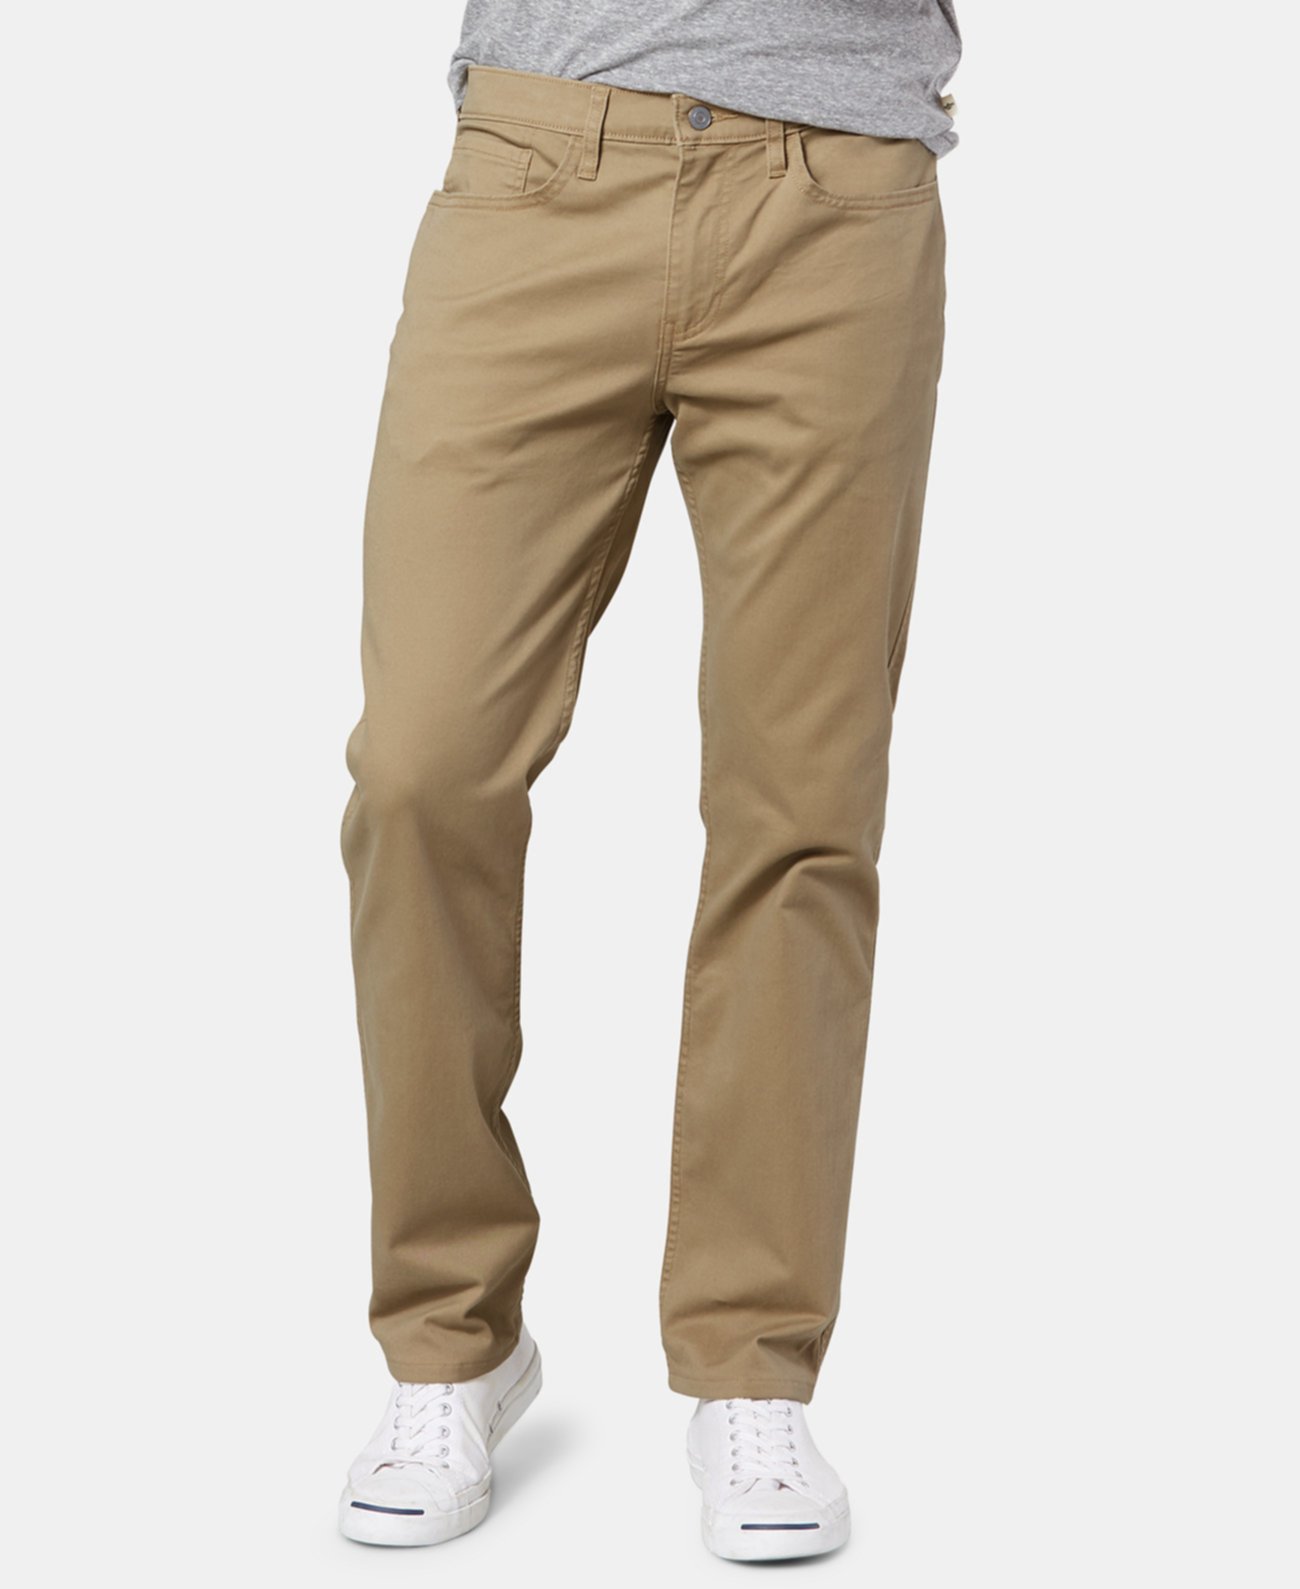 Мужские большие и высокие джинсовые классические брюки All Seasons Tech цвета хаки Dockers